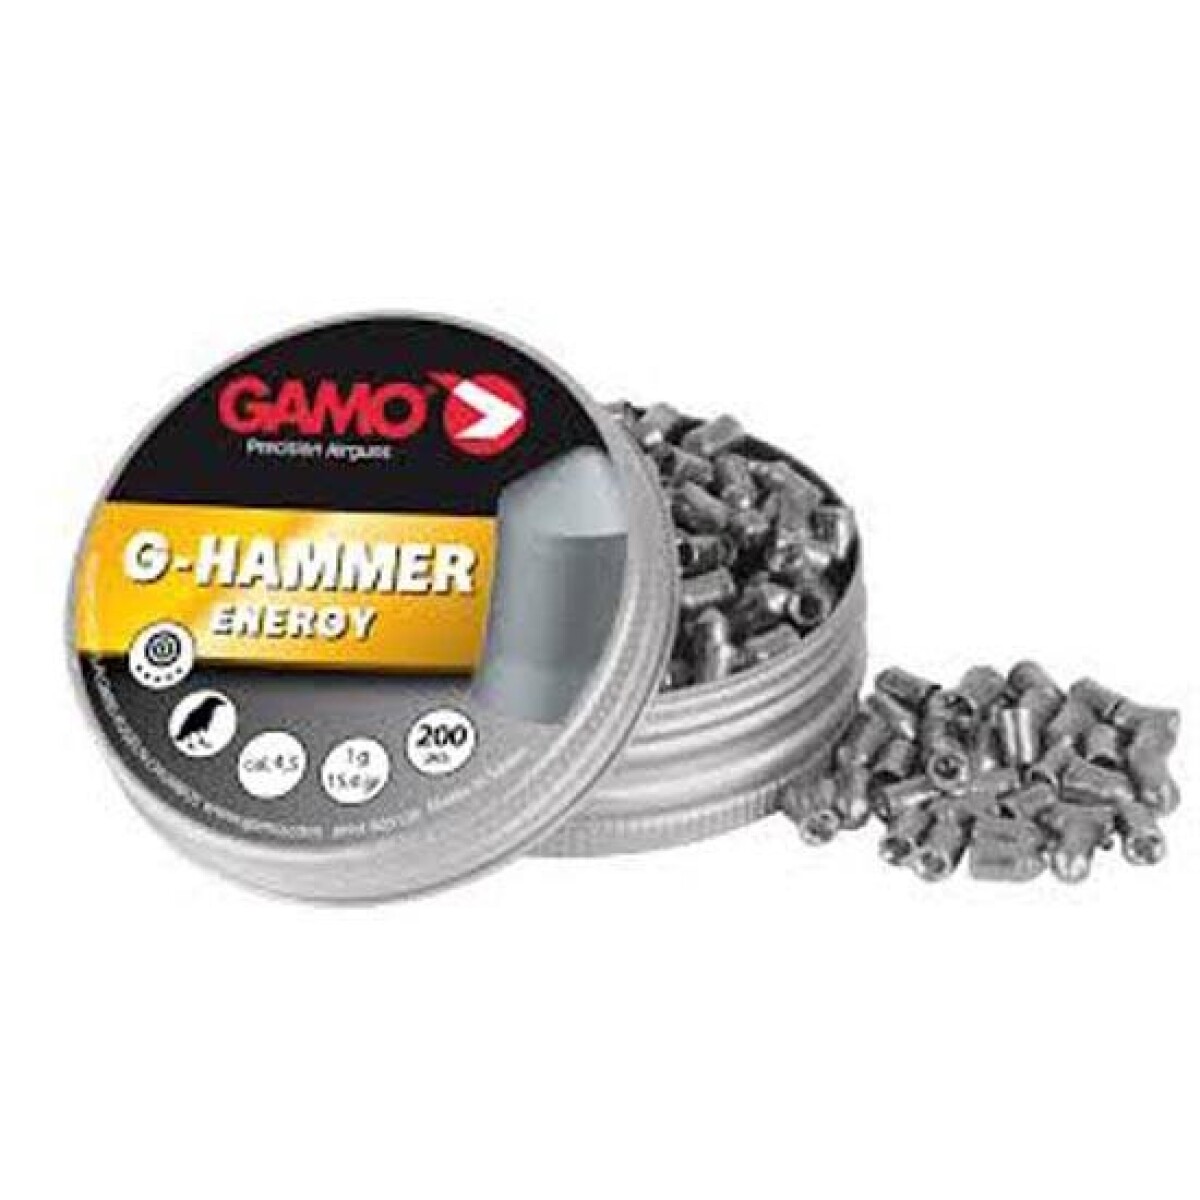 Chumbo gamo g-hammer c 4.5x200 